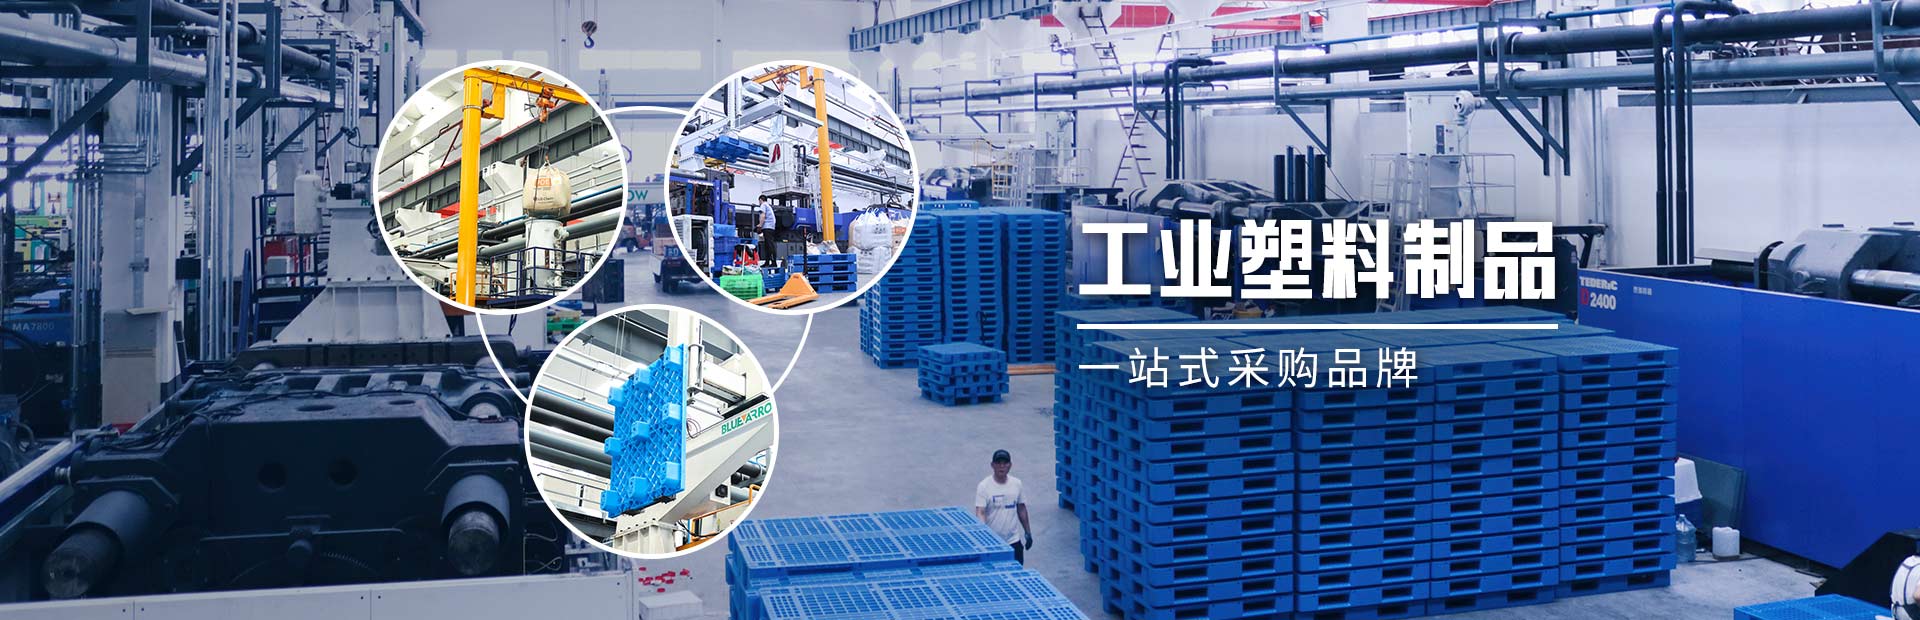 林辉塑业-工业塑料制品，一站式采购品牌